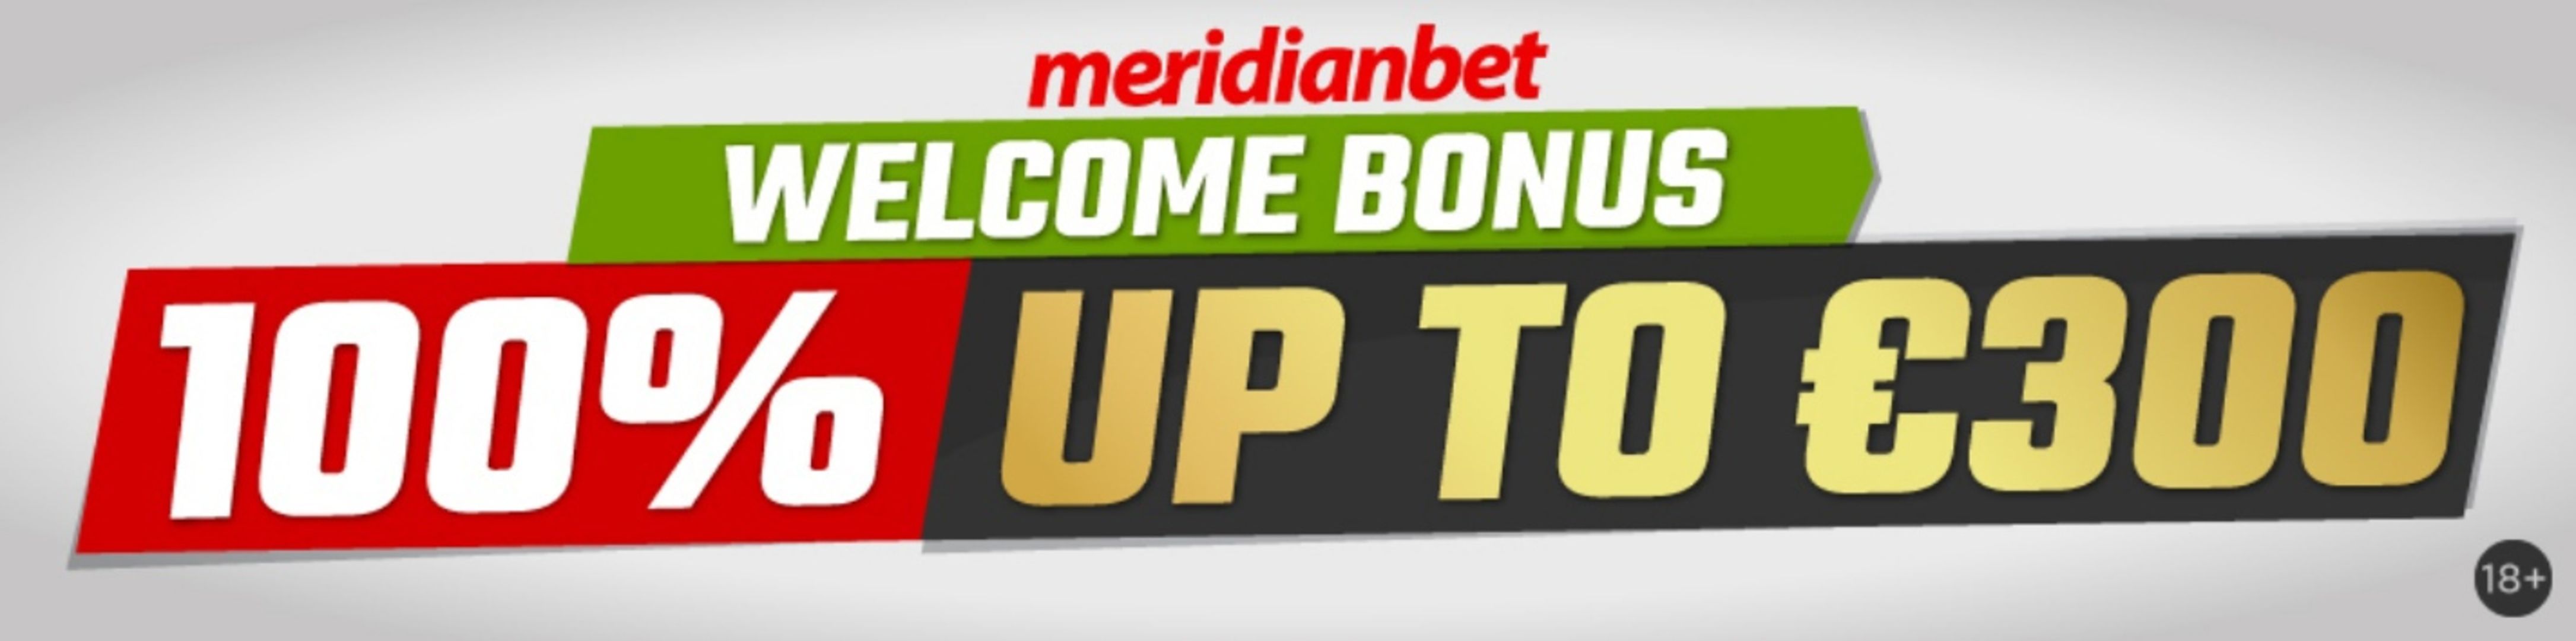 Meridianbet предлагает приветственный бонус 100% до 300 евро